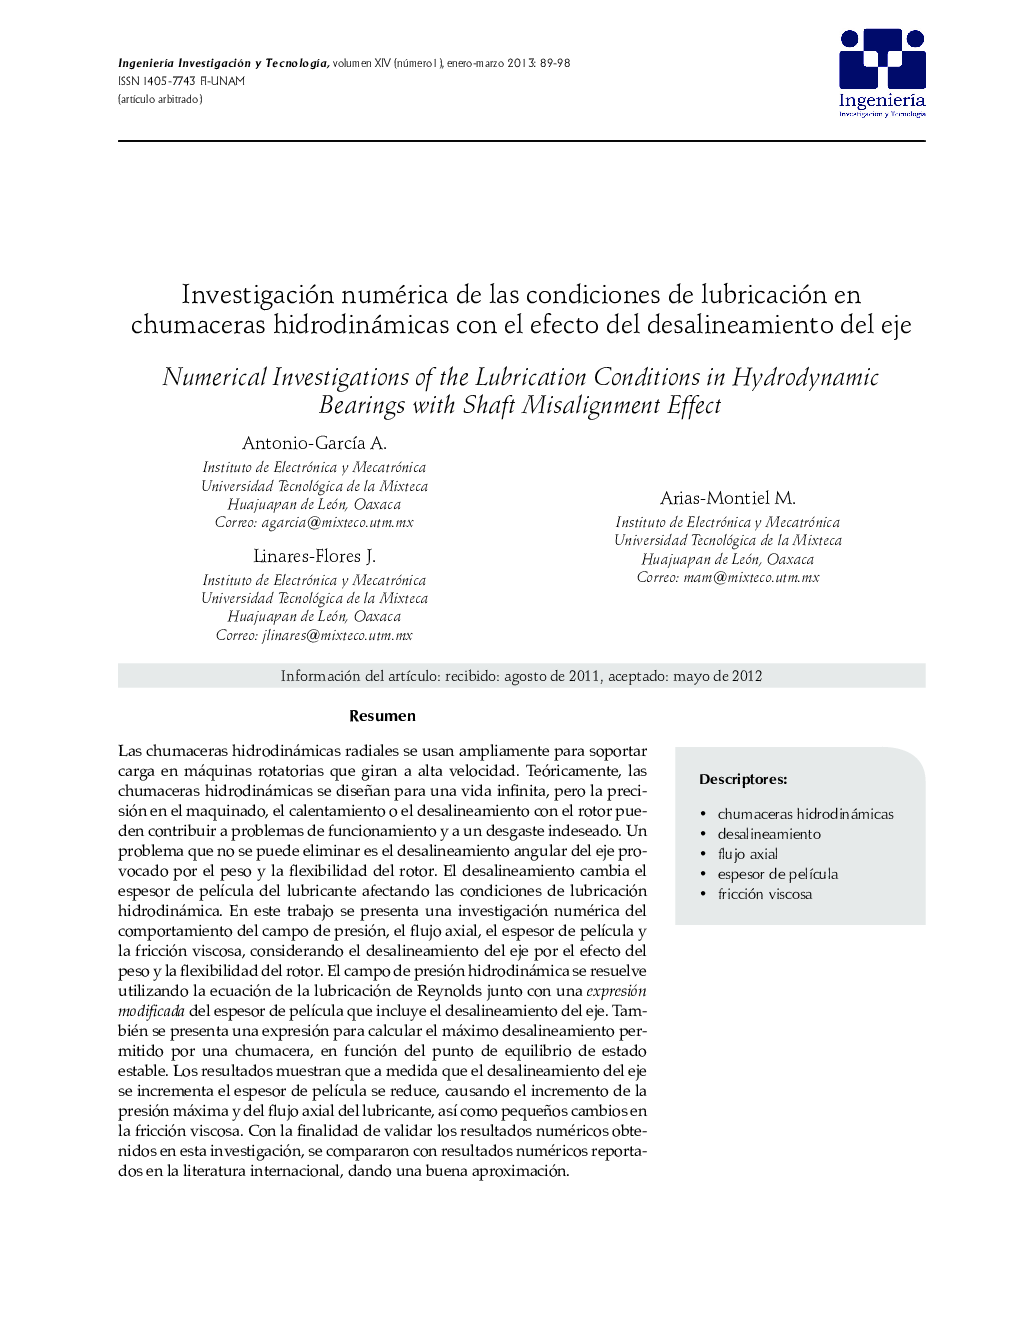 Investigación numérica de las condiciones de lubricación en chumaceras hidrodinámicas con el efecto del desalineamiento del eje *